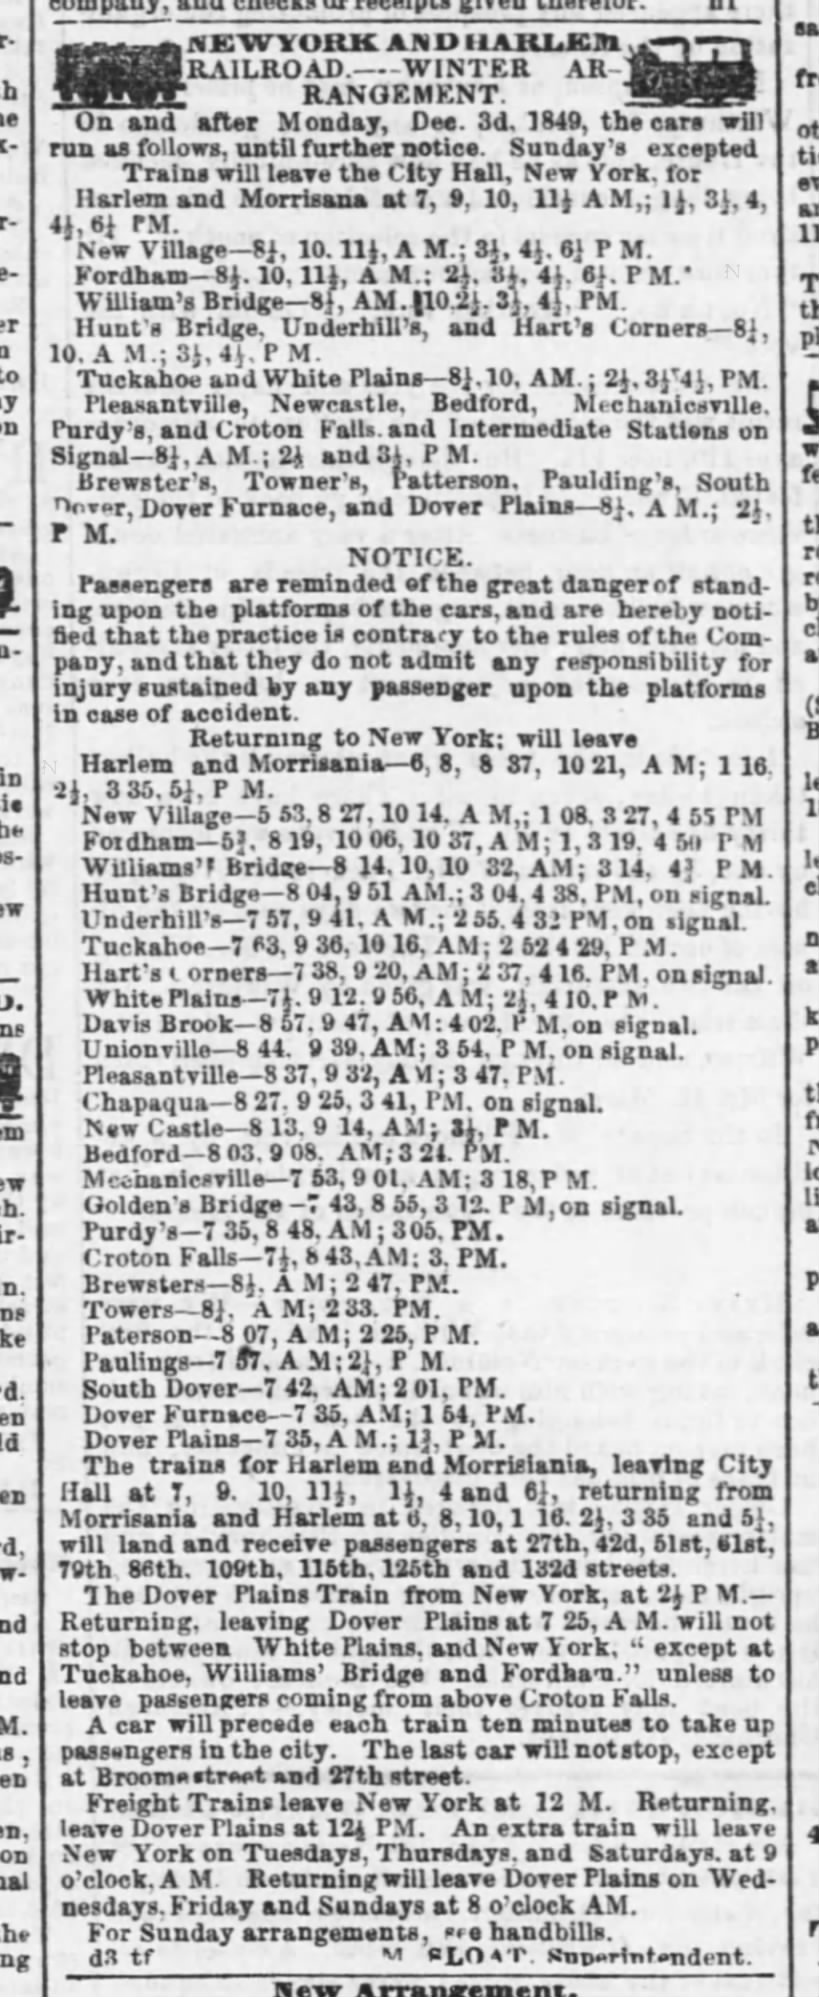 Harlem Railroad, December 12, 1849